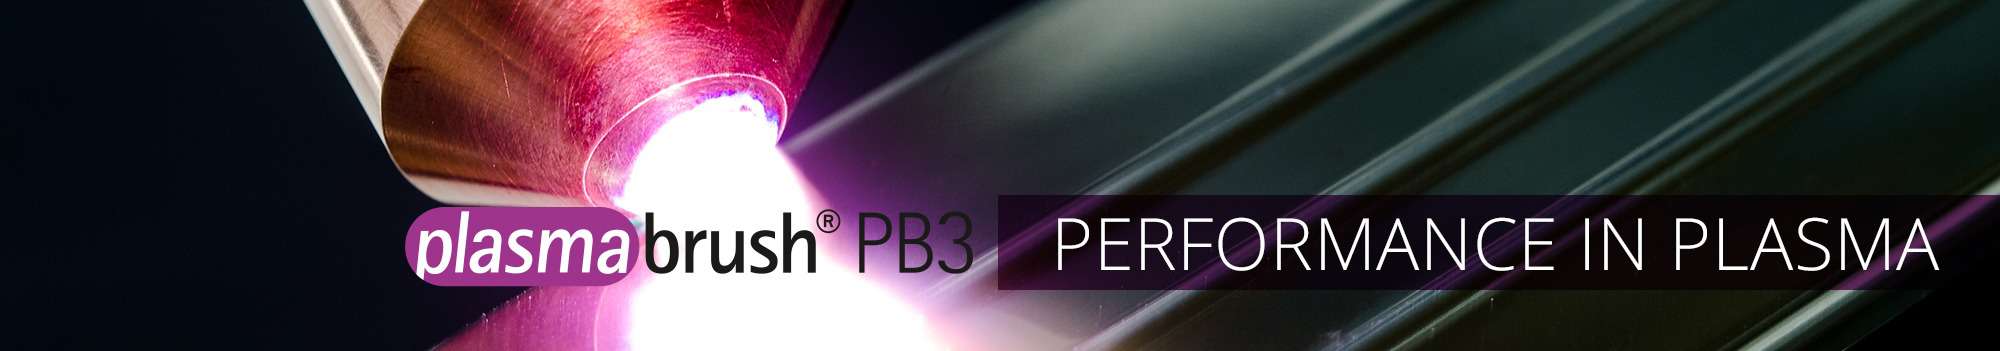 Plasmabrush PB3 Performance in Plasma